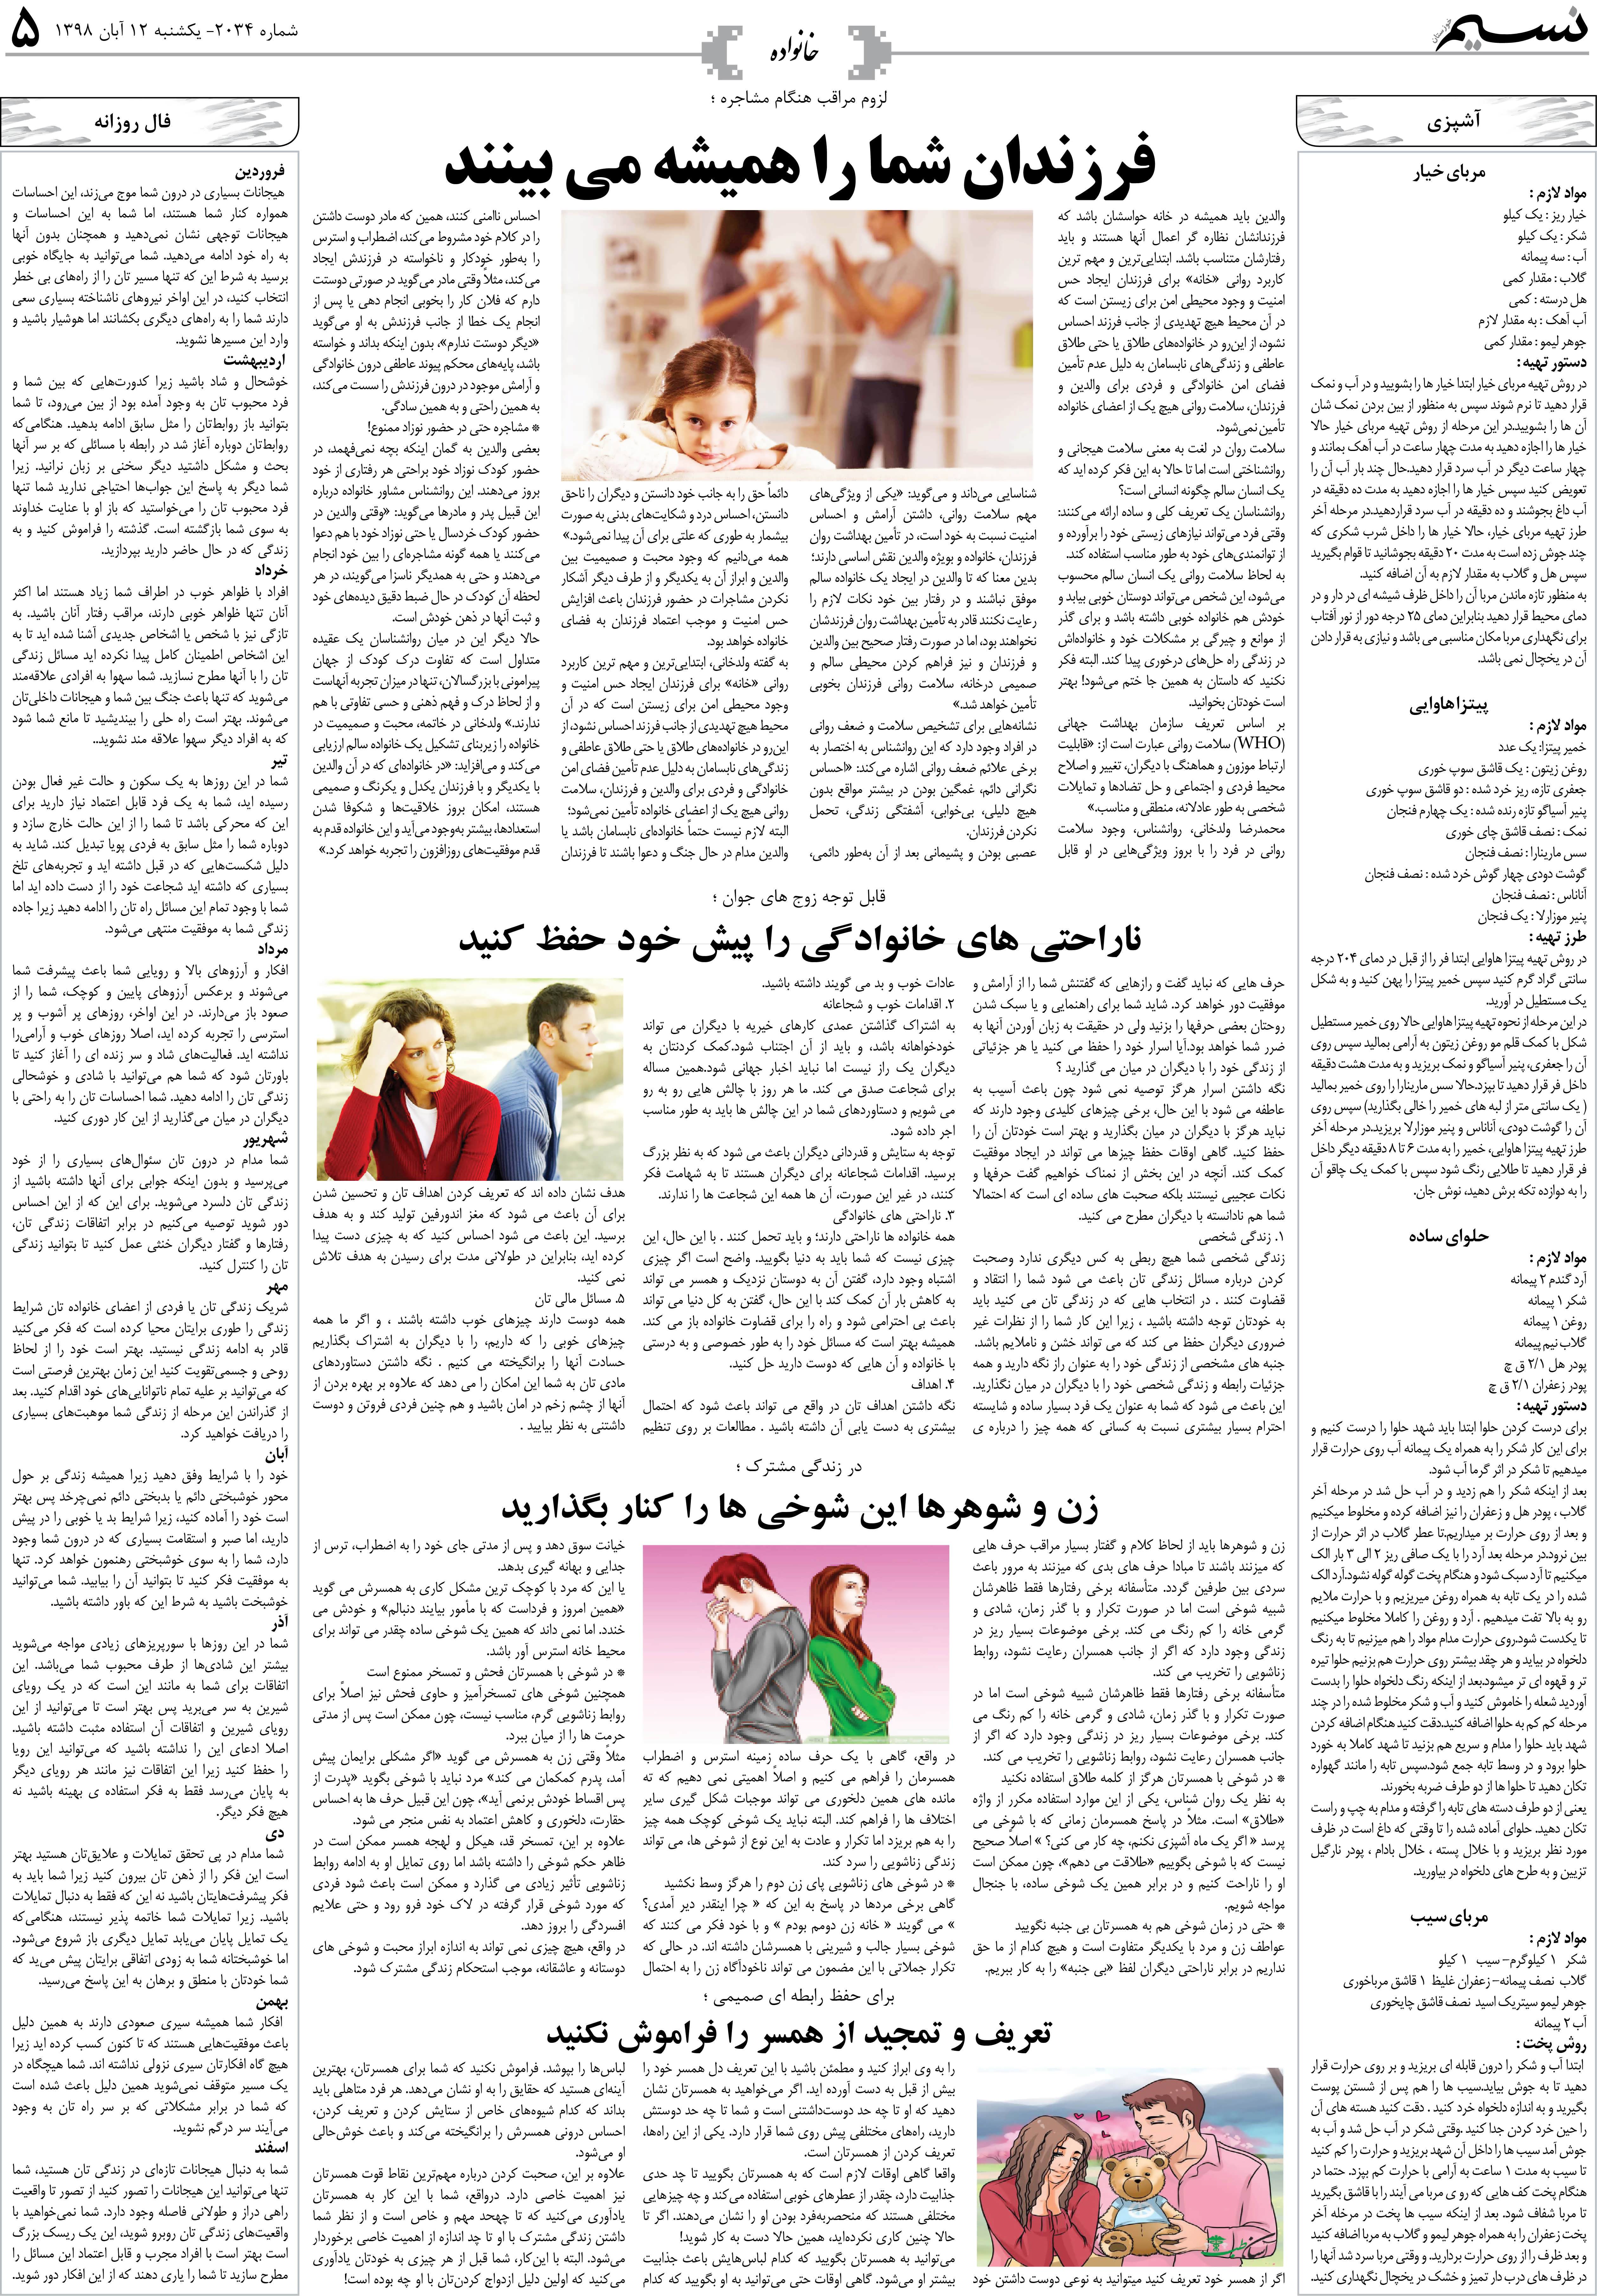 صفحه خانواده روزنامه نسیم شماره 2034